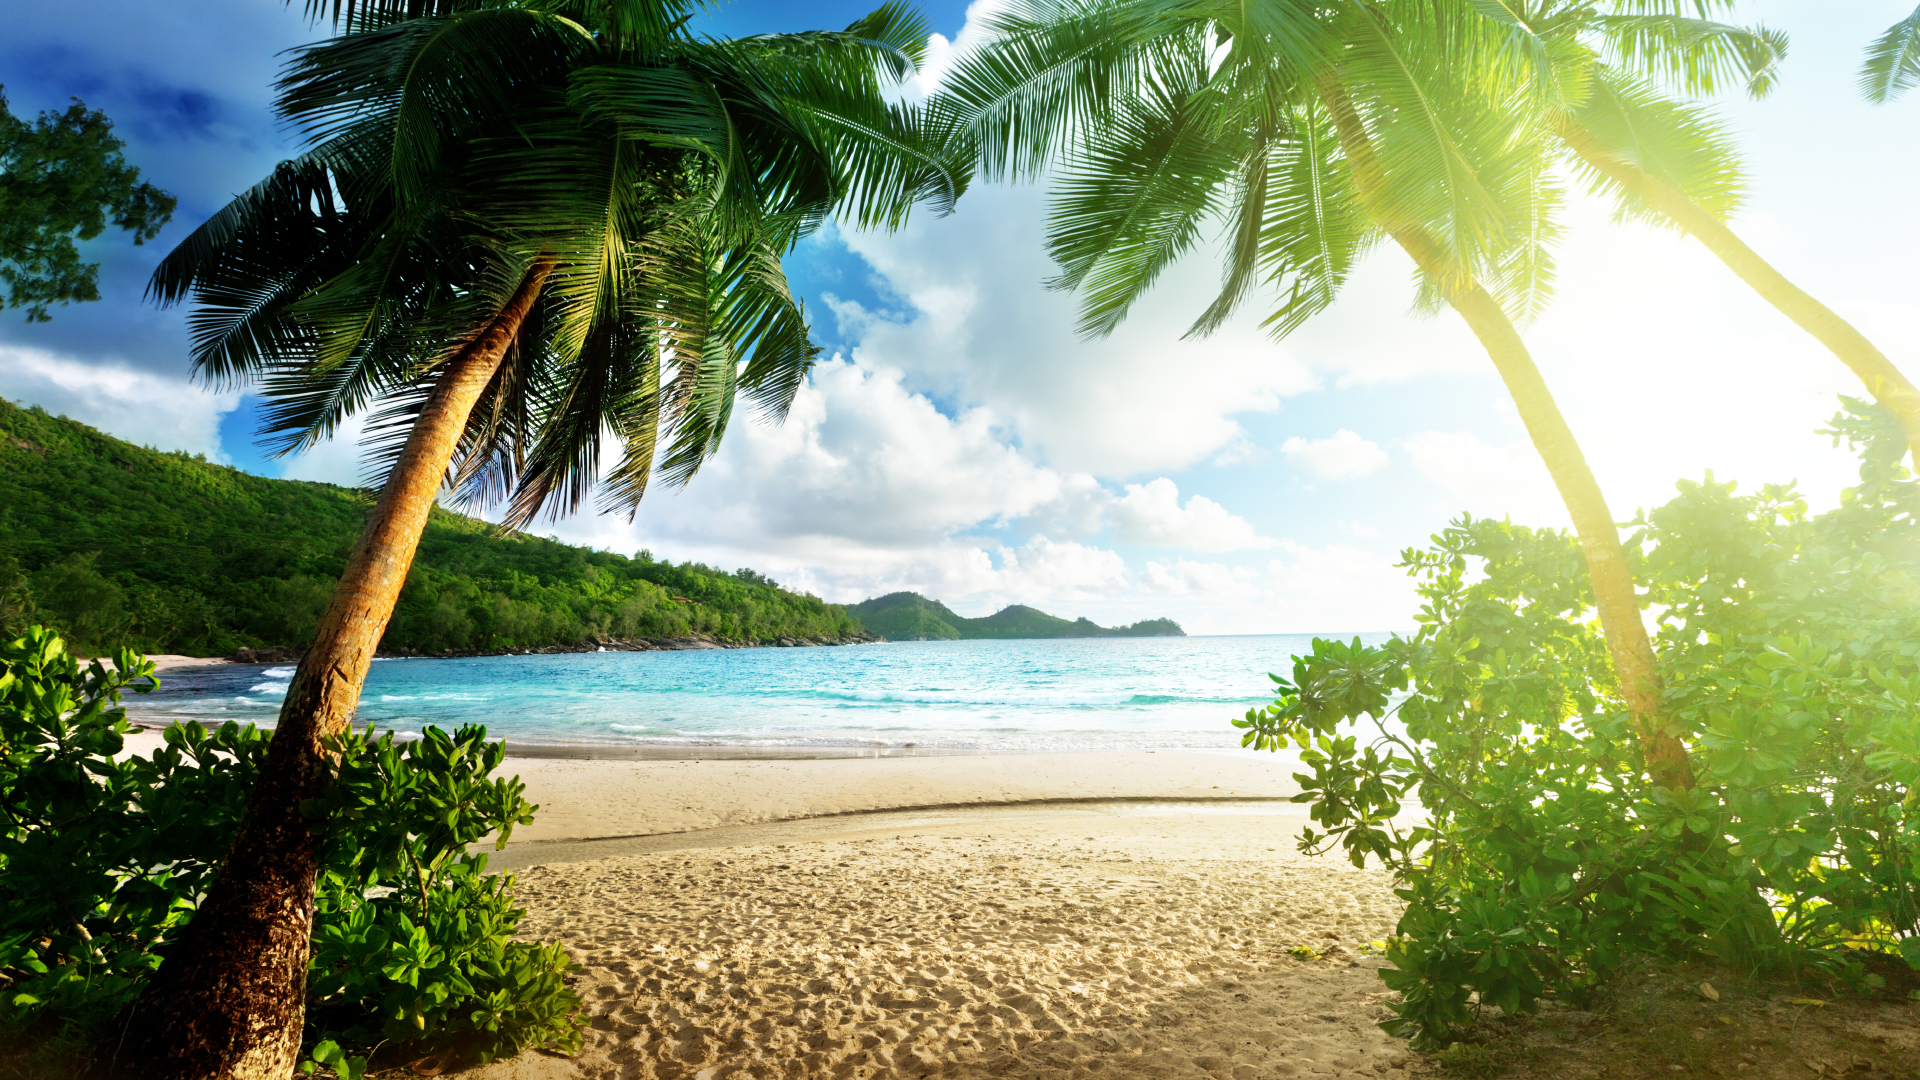 Tropical Paradise Beach HD Wallpaper | 1920x1080 | ID:56315